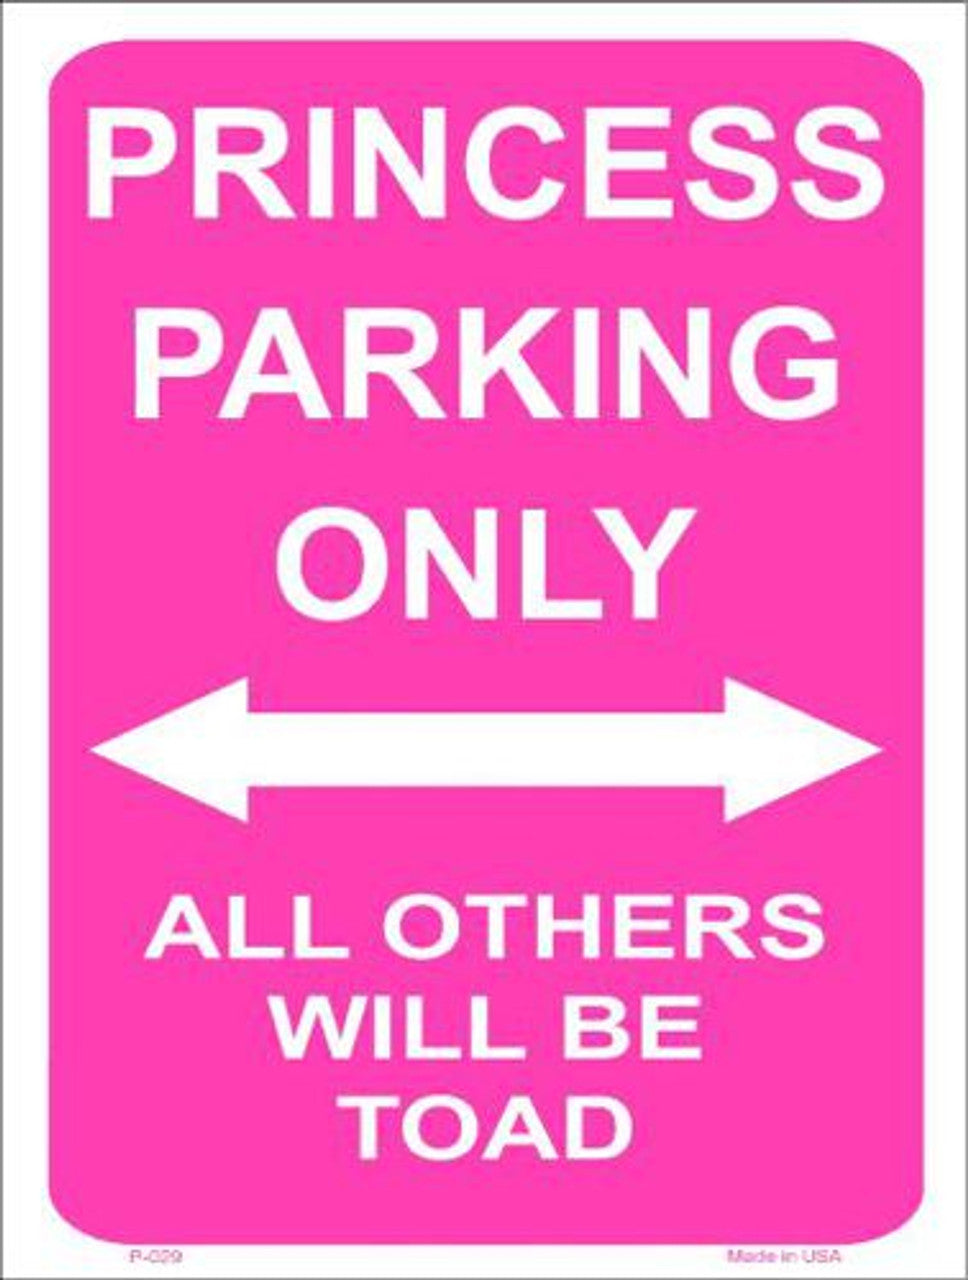 Princess Parking Only 9" x 12" Aluminum Metal Parking Sign P-029